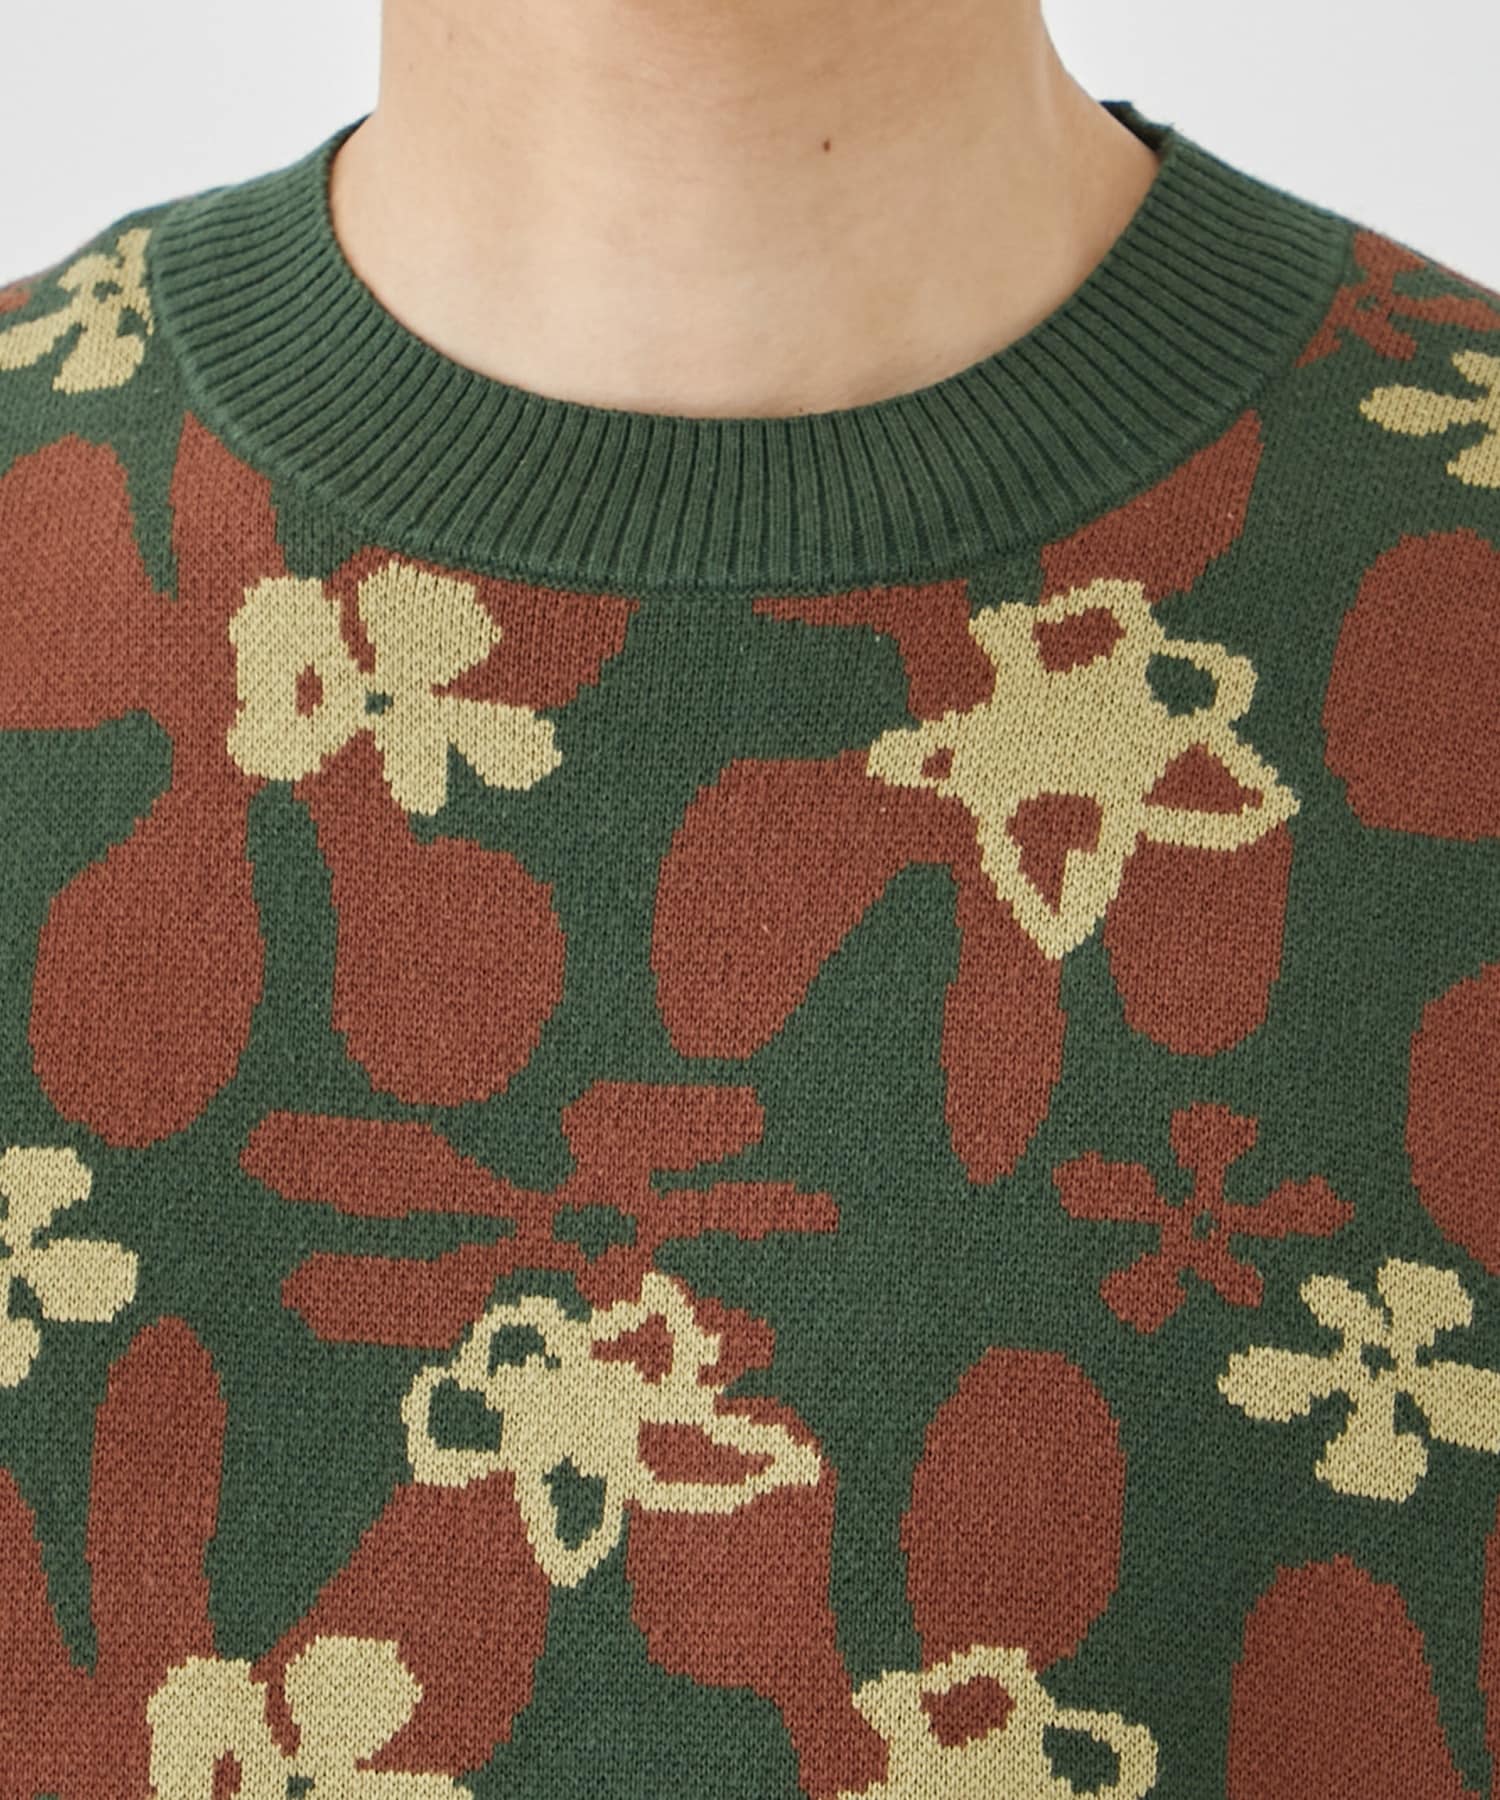 Flower camo knit vest | TTT MSW